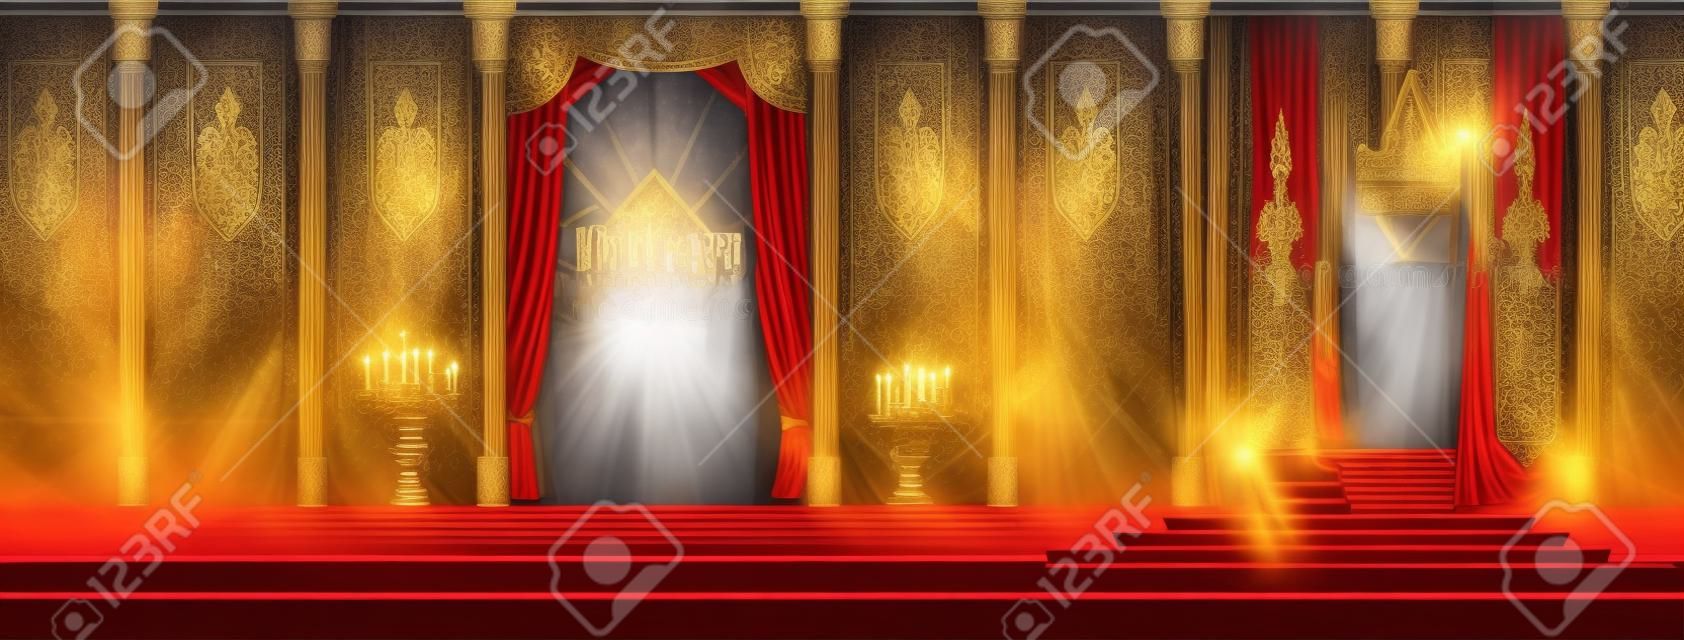 Salle du trône spacieuse du château médiéval ou vecteur de dessin animé intérieur de la salle de bal. Chemin de tapis rouge vers le trône des rois sur piédestal, rideaux sur la fenêtre, drapeaux avec emblème royal sur les murs, illustration des armures des chevaliers